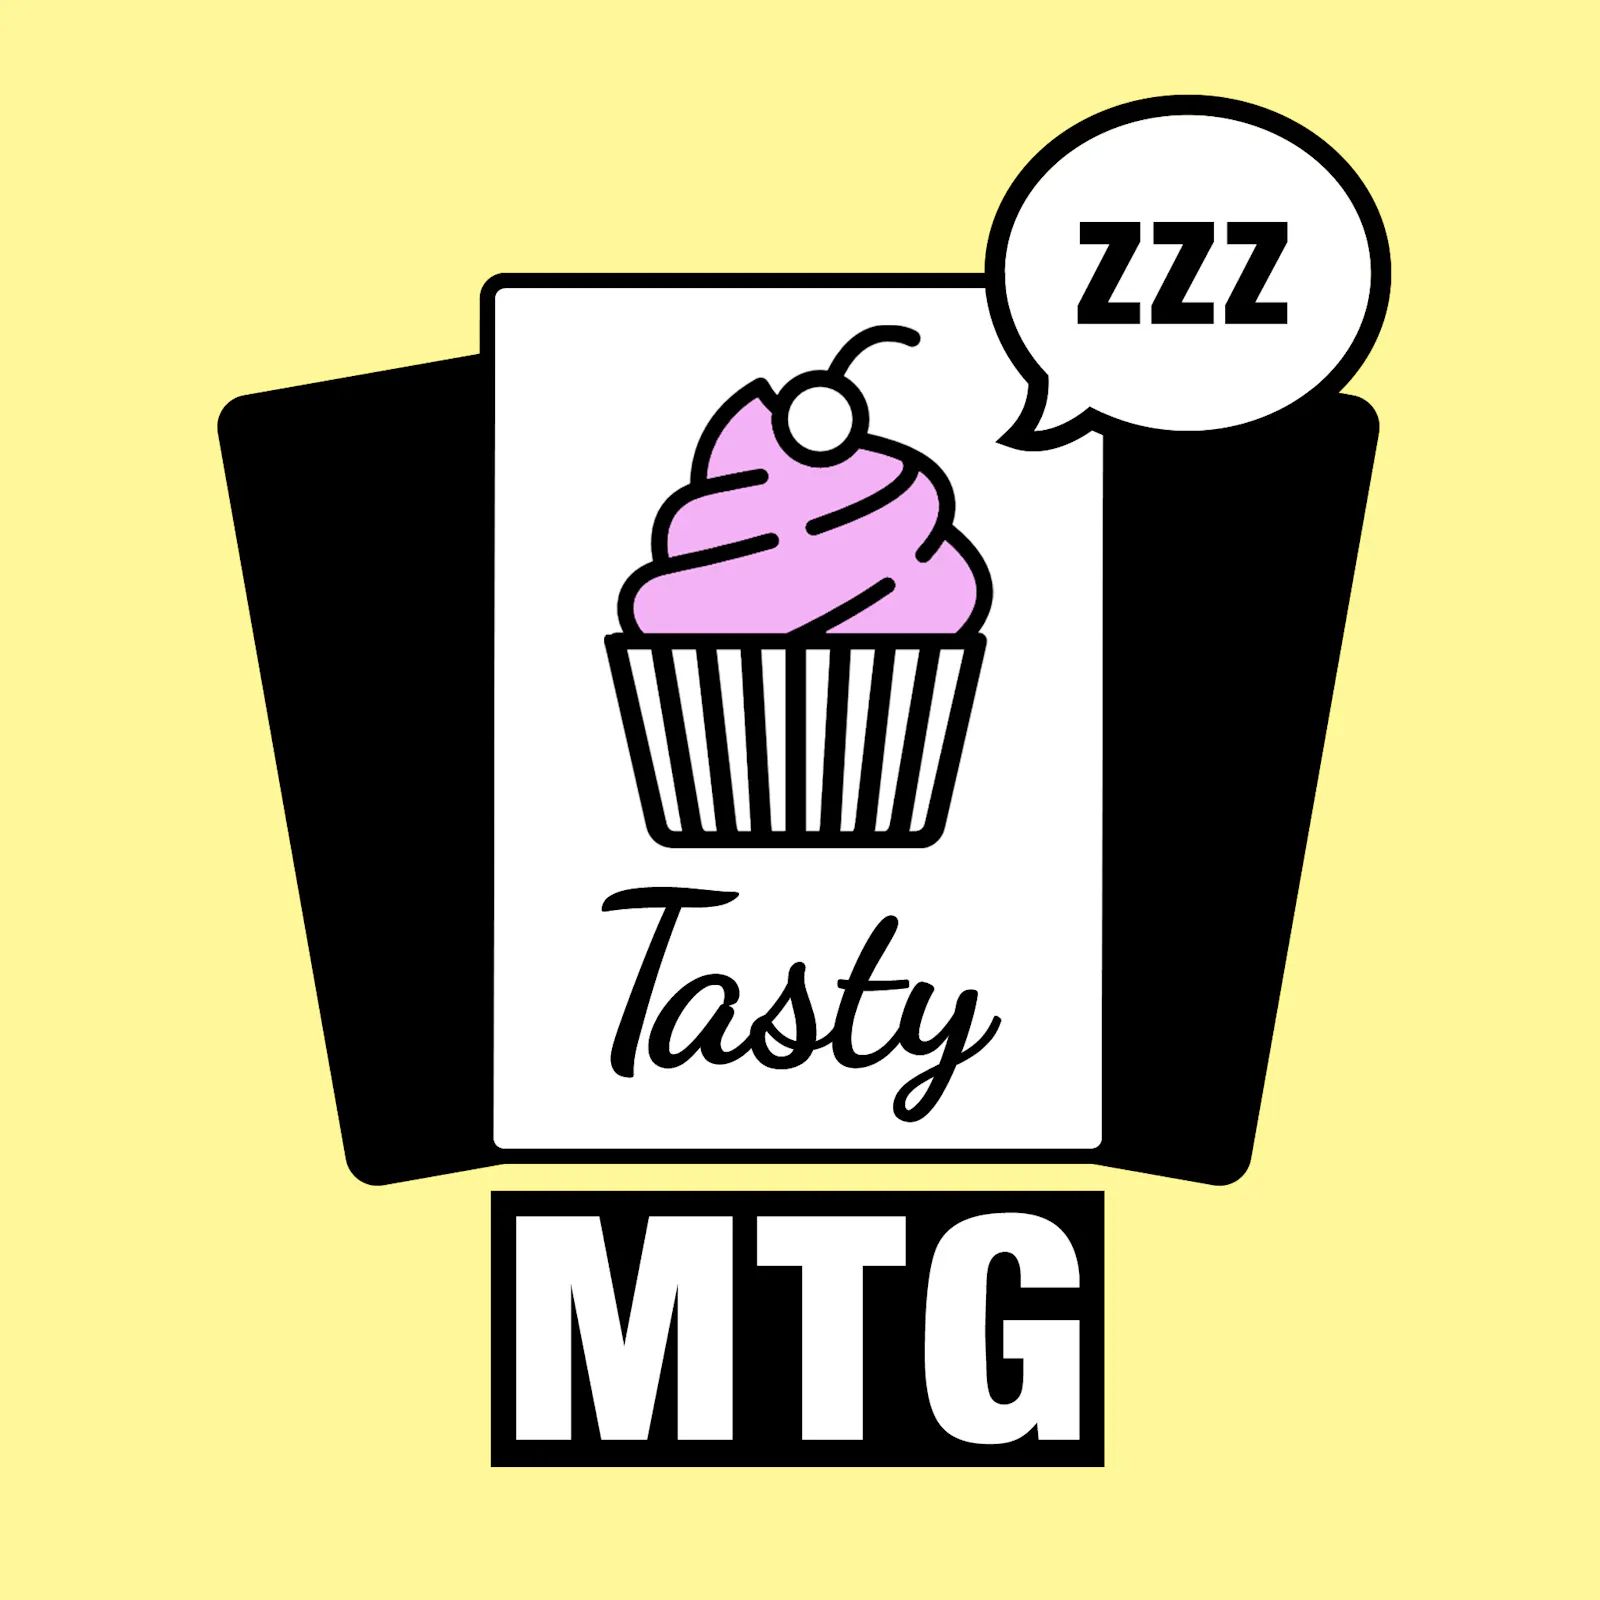 Das Logo zur aktuellen Folge: Der Cupcake ist in tiefen Schlummerschlaf gefallen.